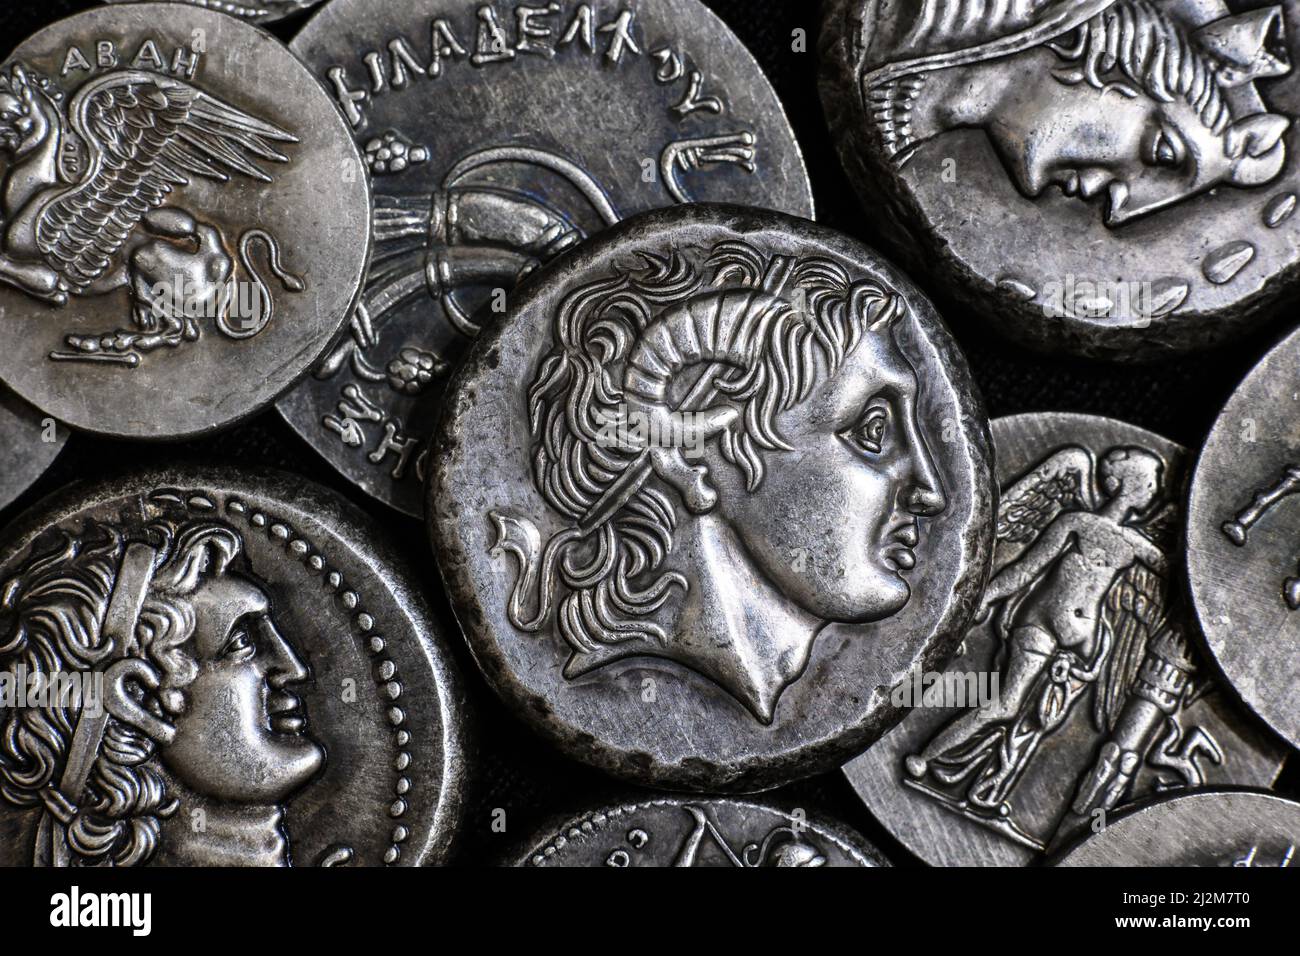 Moneta greca antica con Alessandro il Grande ritratto, mucchio di monete in argento tetradrachm. Vista dall'alto dei vecchi soldi rari. Concetto di Grecia, monete preziose Foto Stock